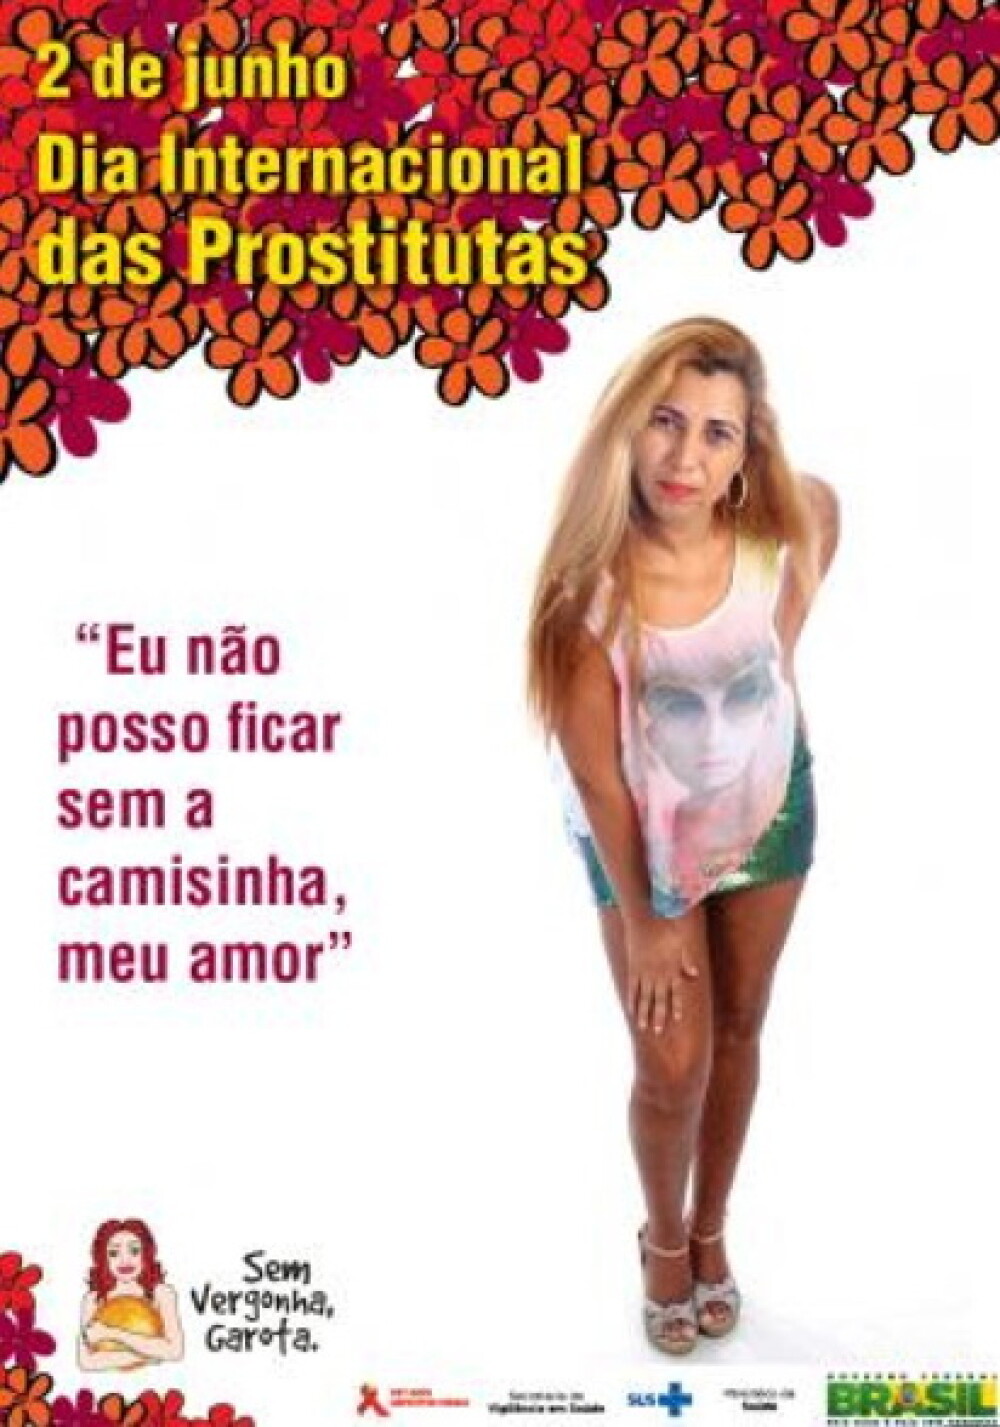 Biserica Catolica a reactionat imediat ce a vazut imaginile. Ce au facut prostituatele din Brazilia - Imaginea 2